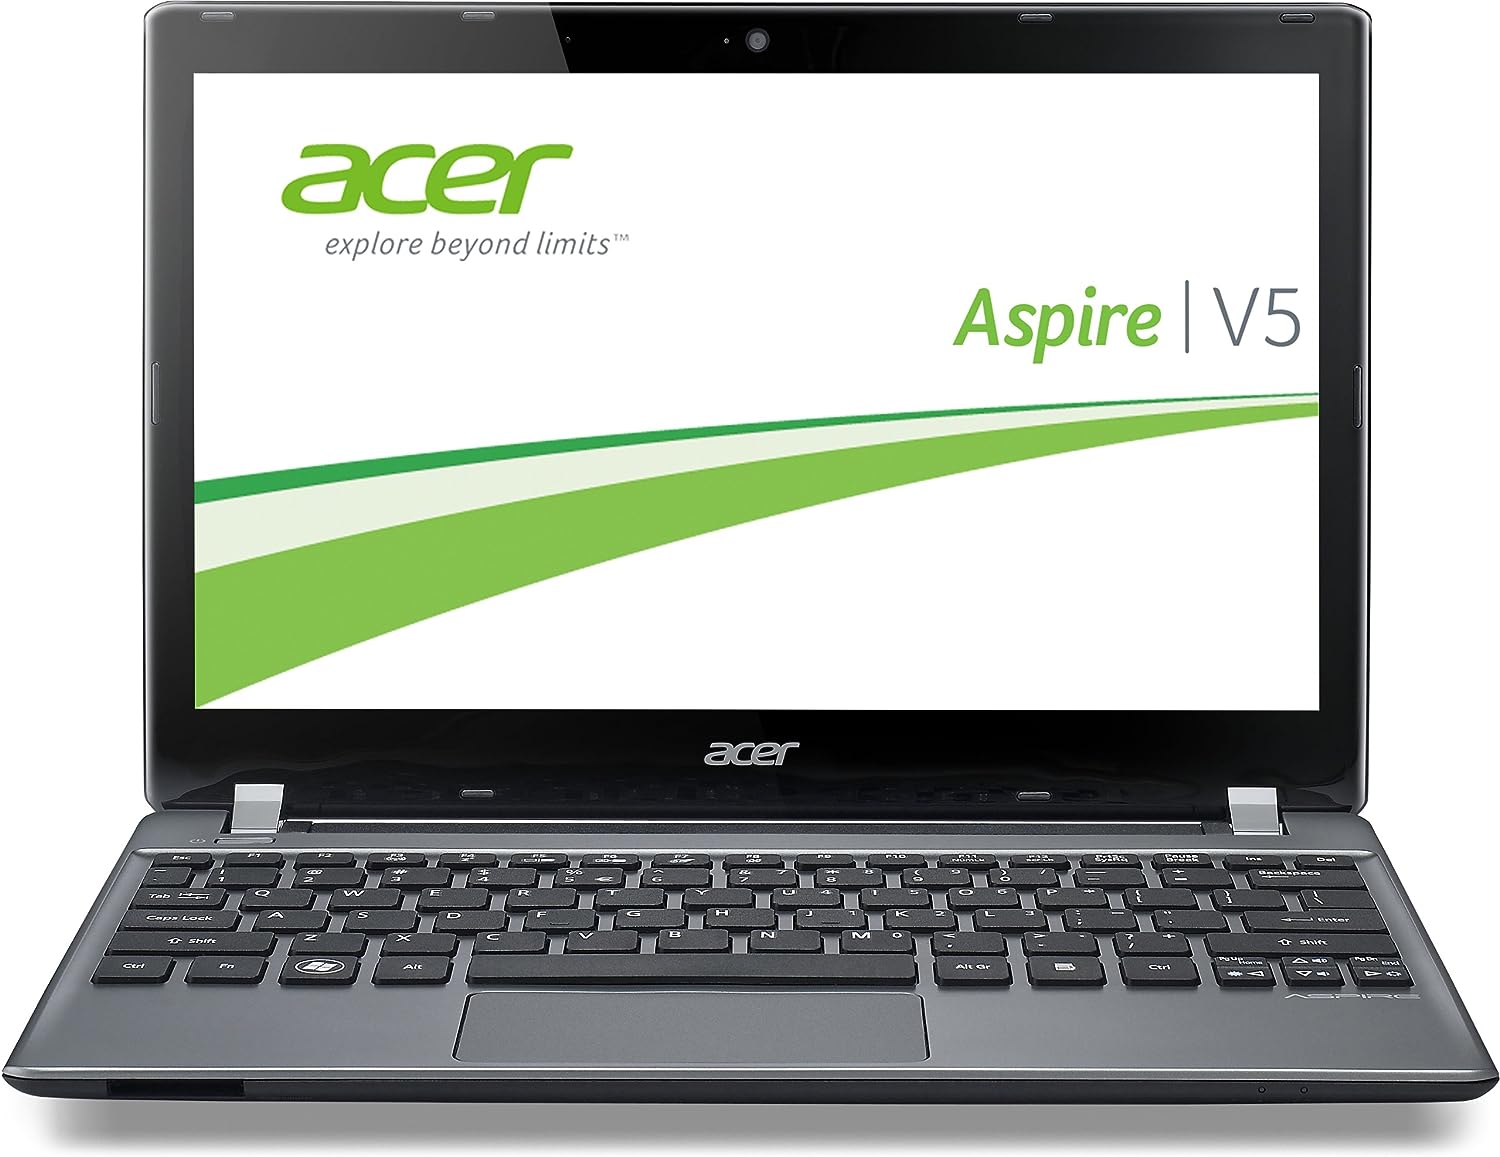 Acer Aspire V5-132 Notebook